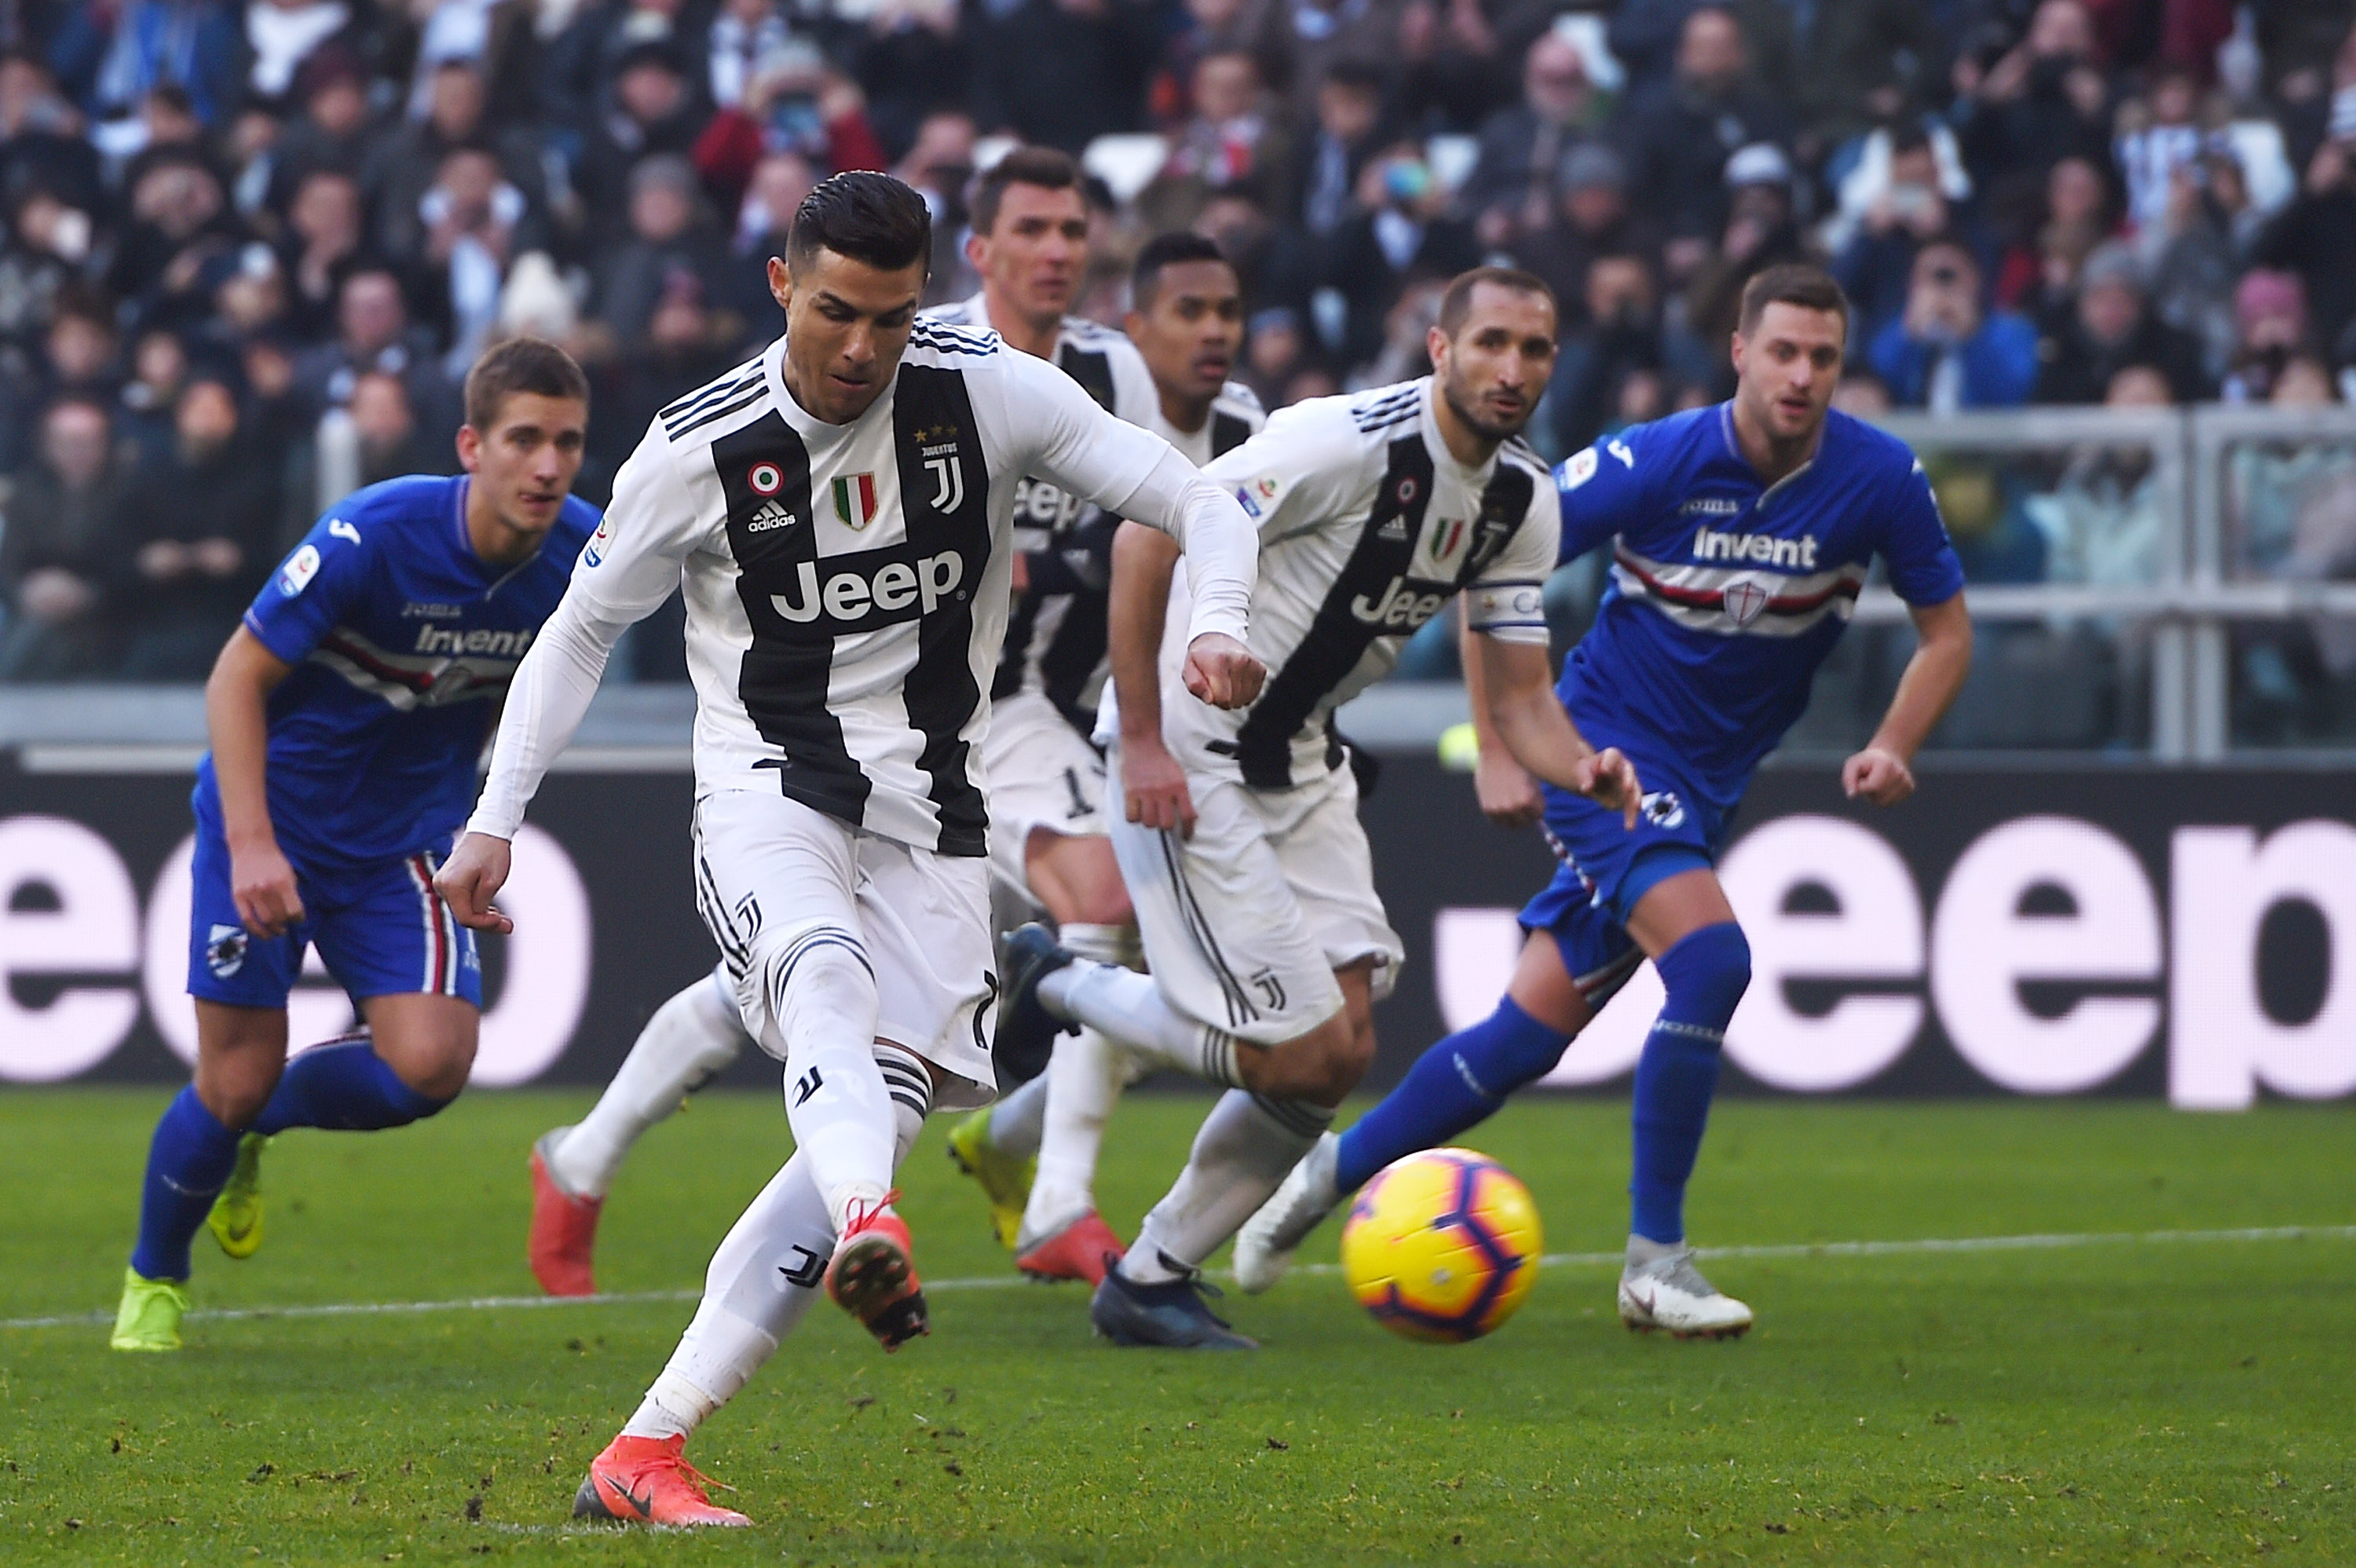 Juventus vs sampdoria